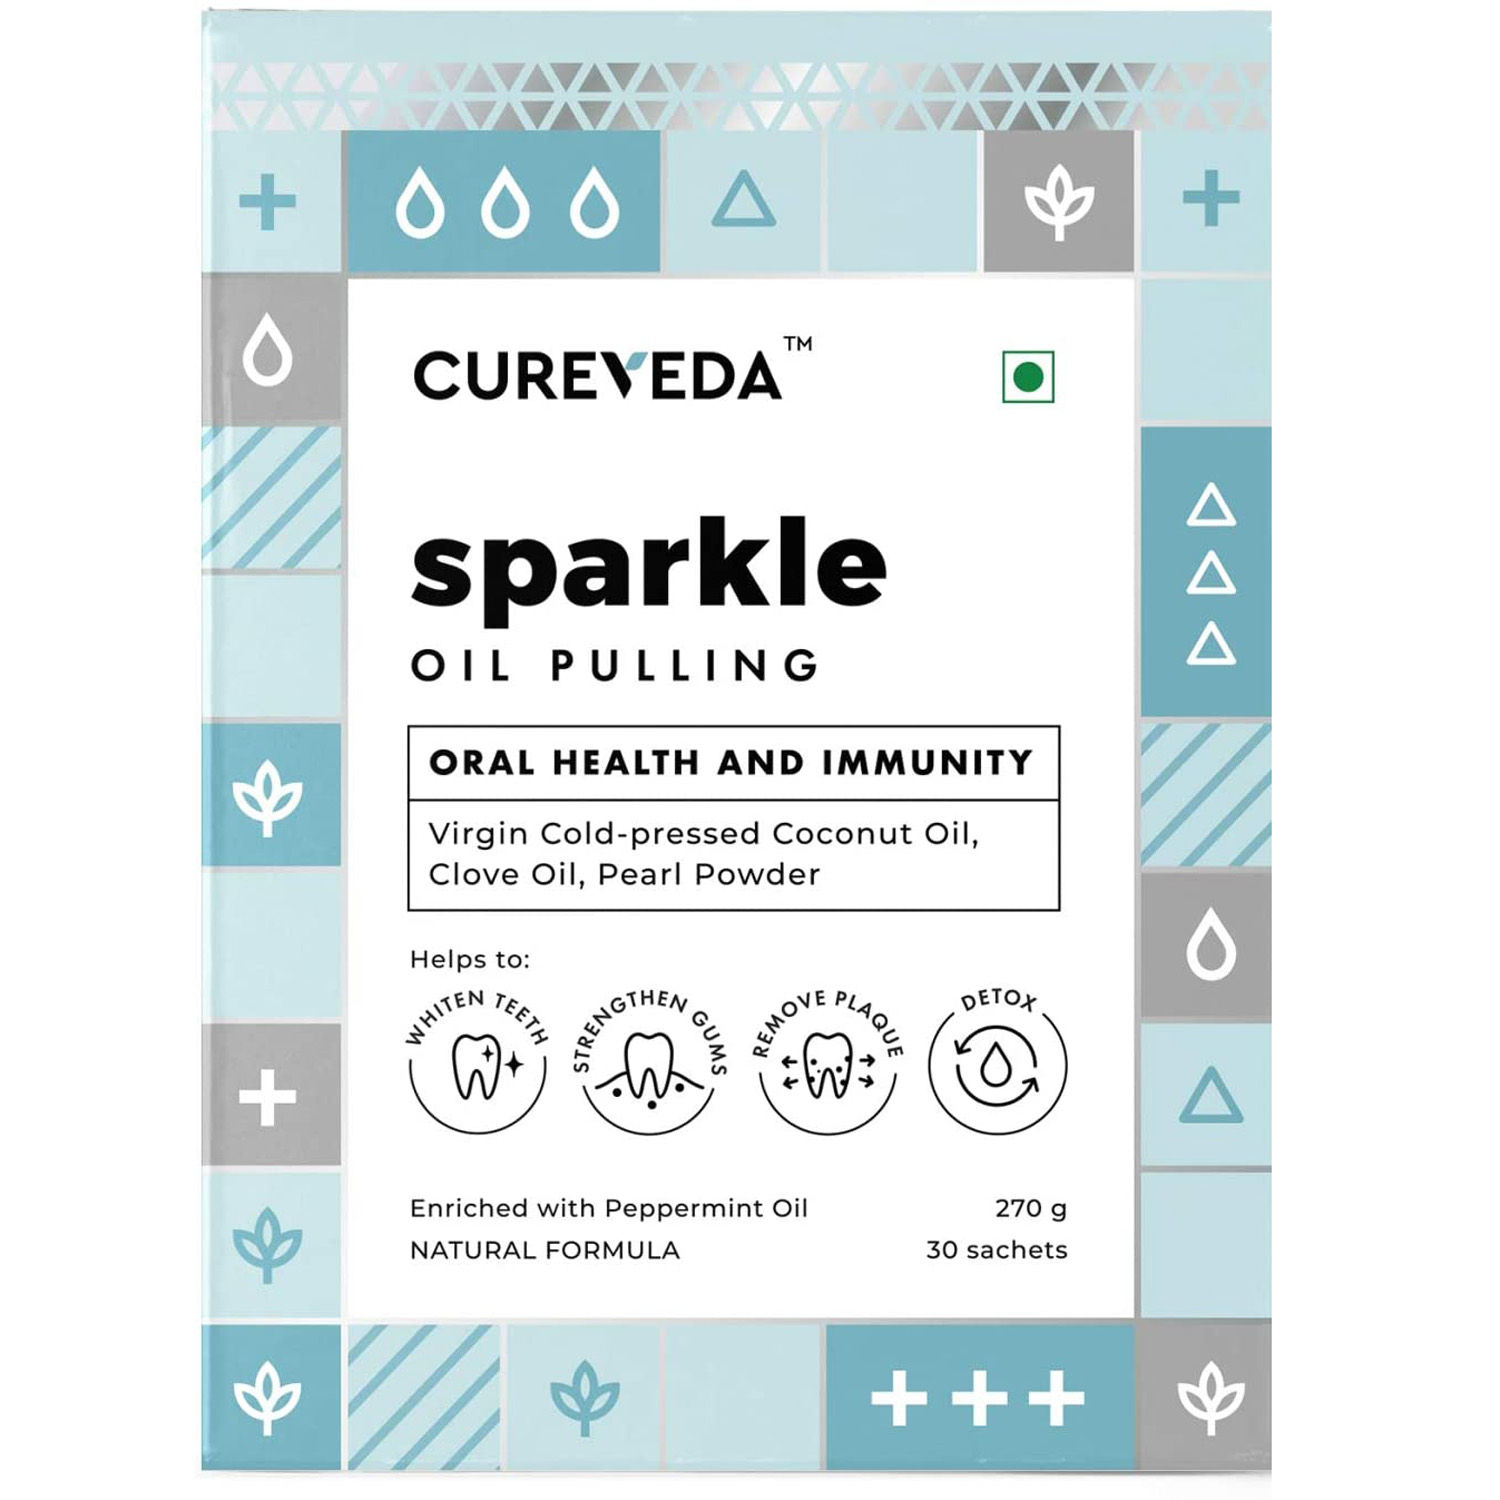 Cureveda Sparkle Oil Pulling, 270 gm, Pack of 1 